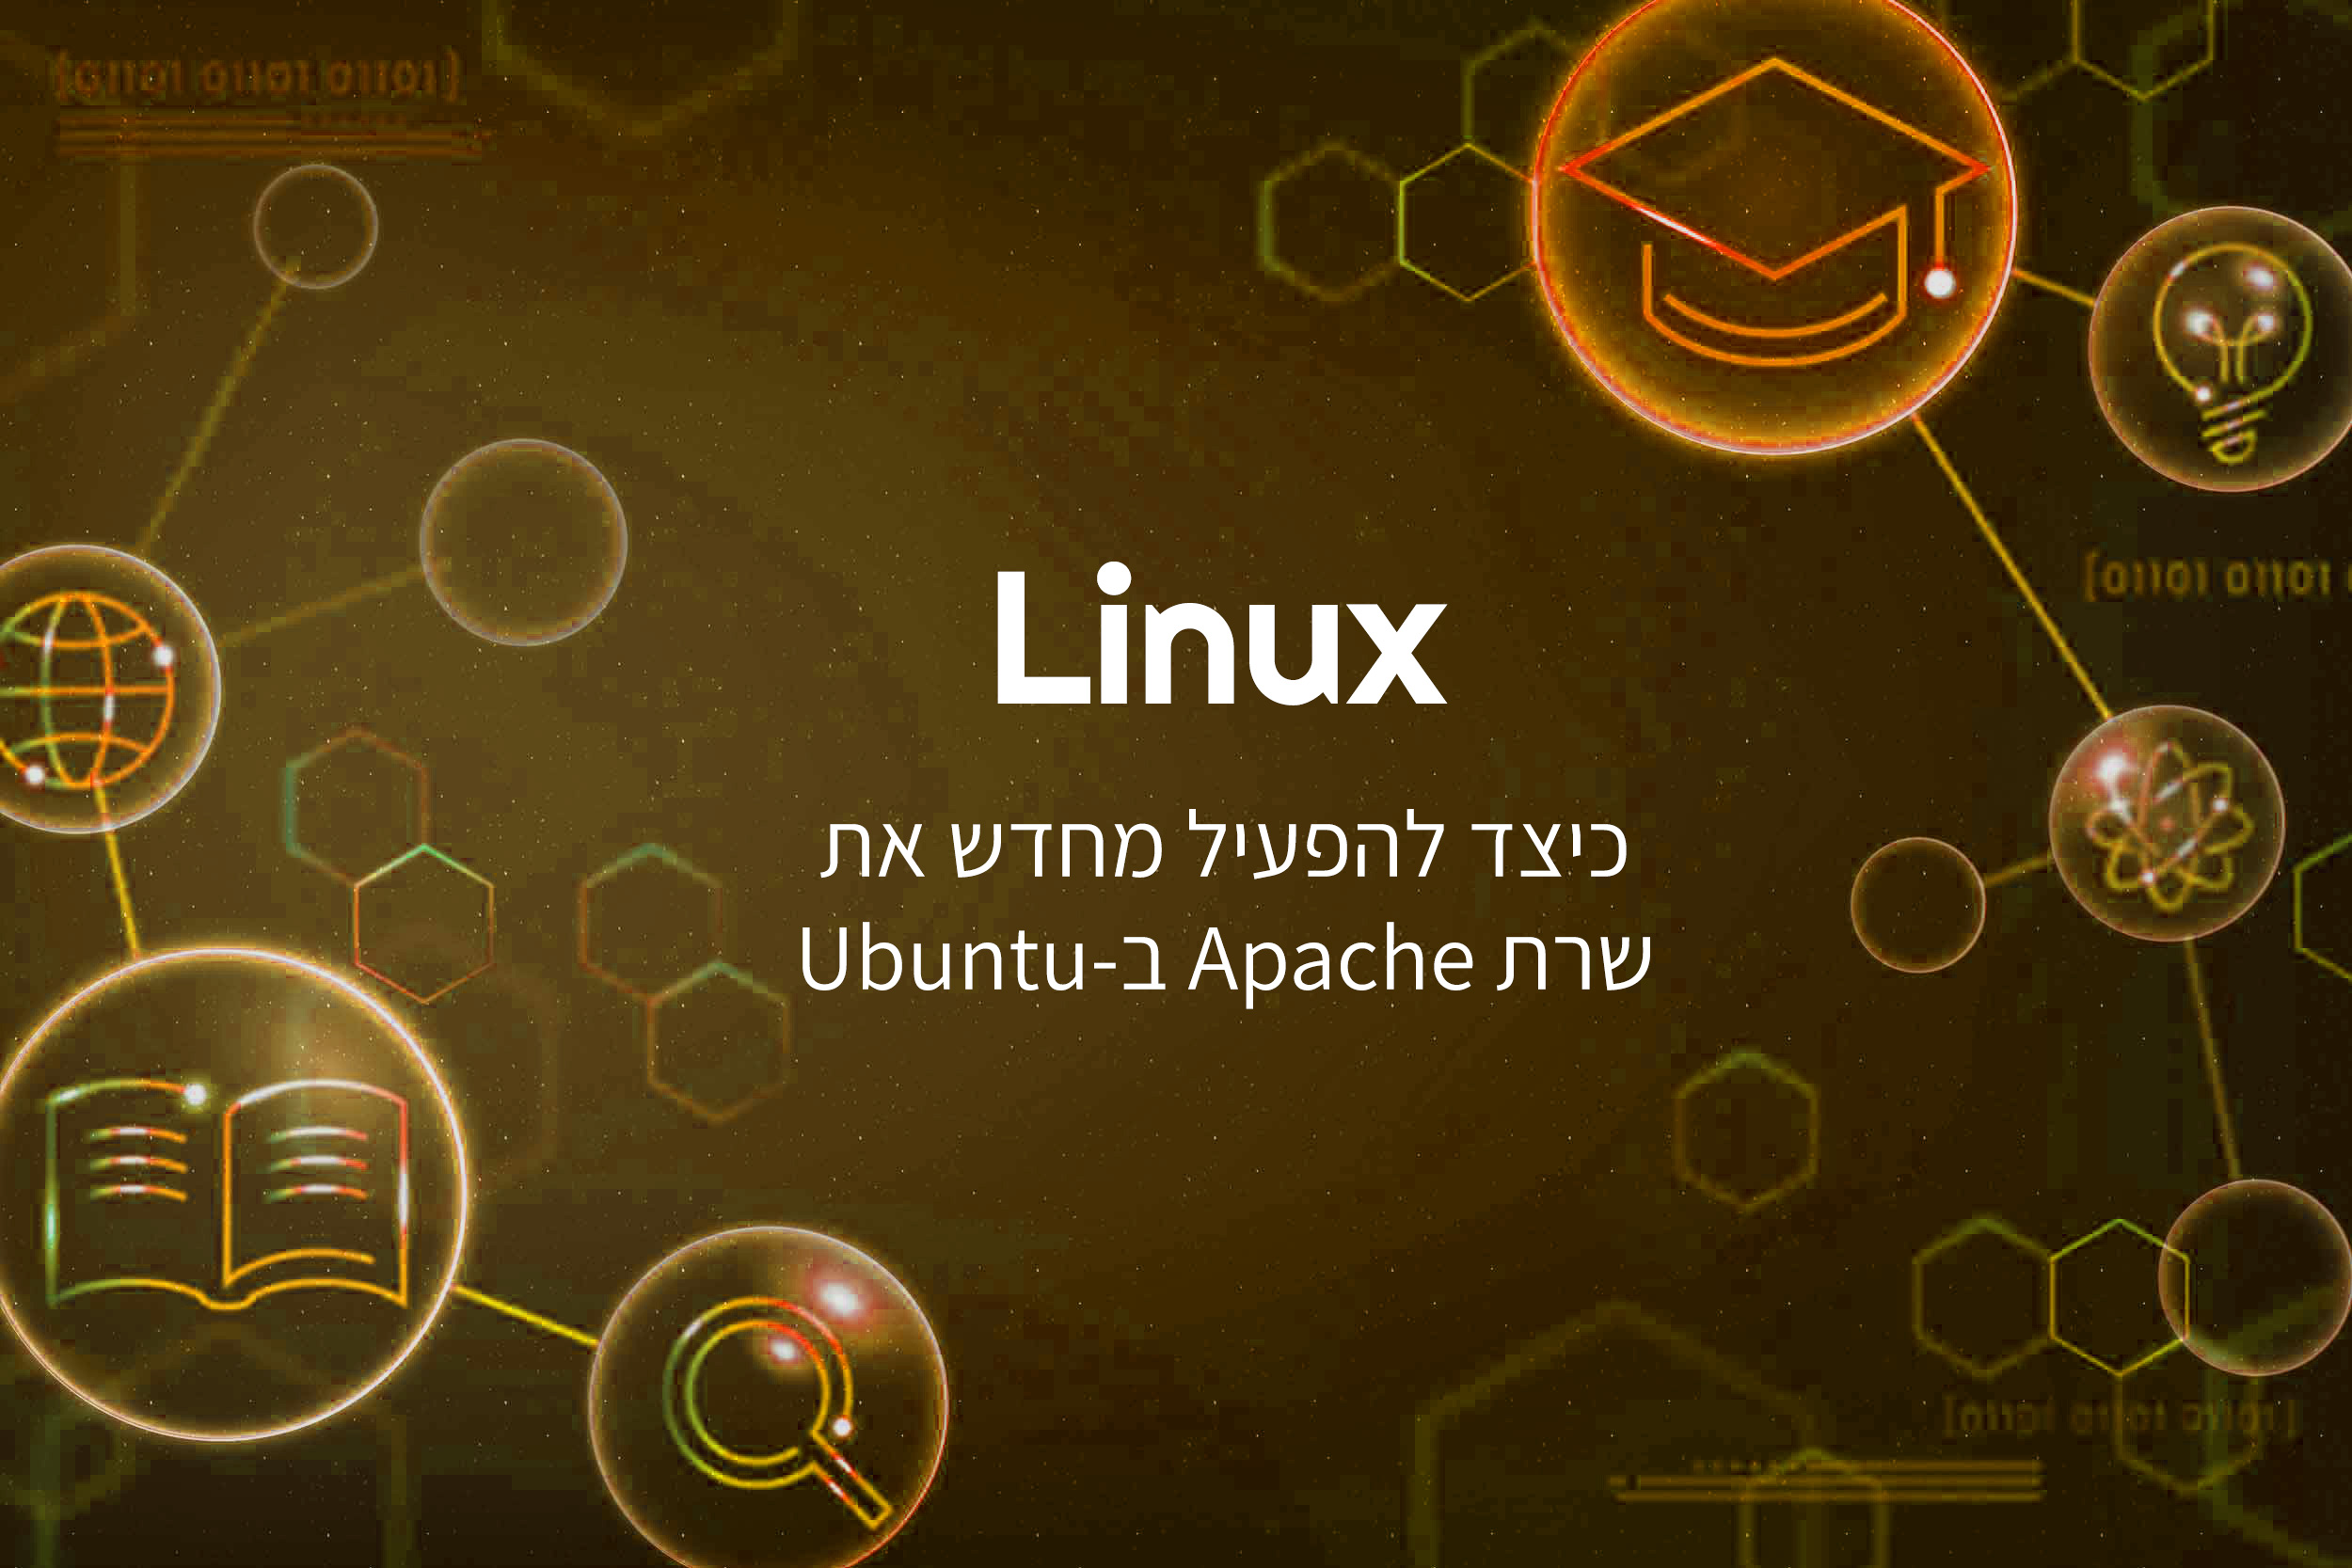 כיצד להפעיל מחדש את שרת Apache ב-Ubuntu